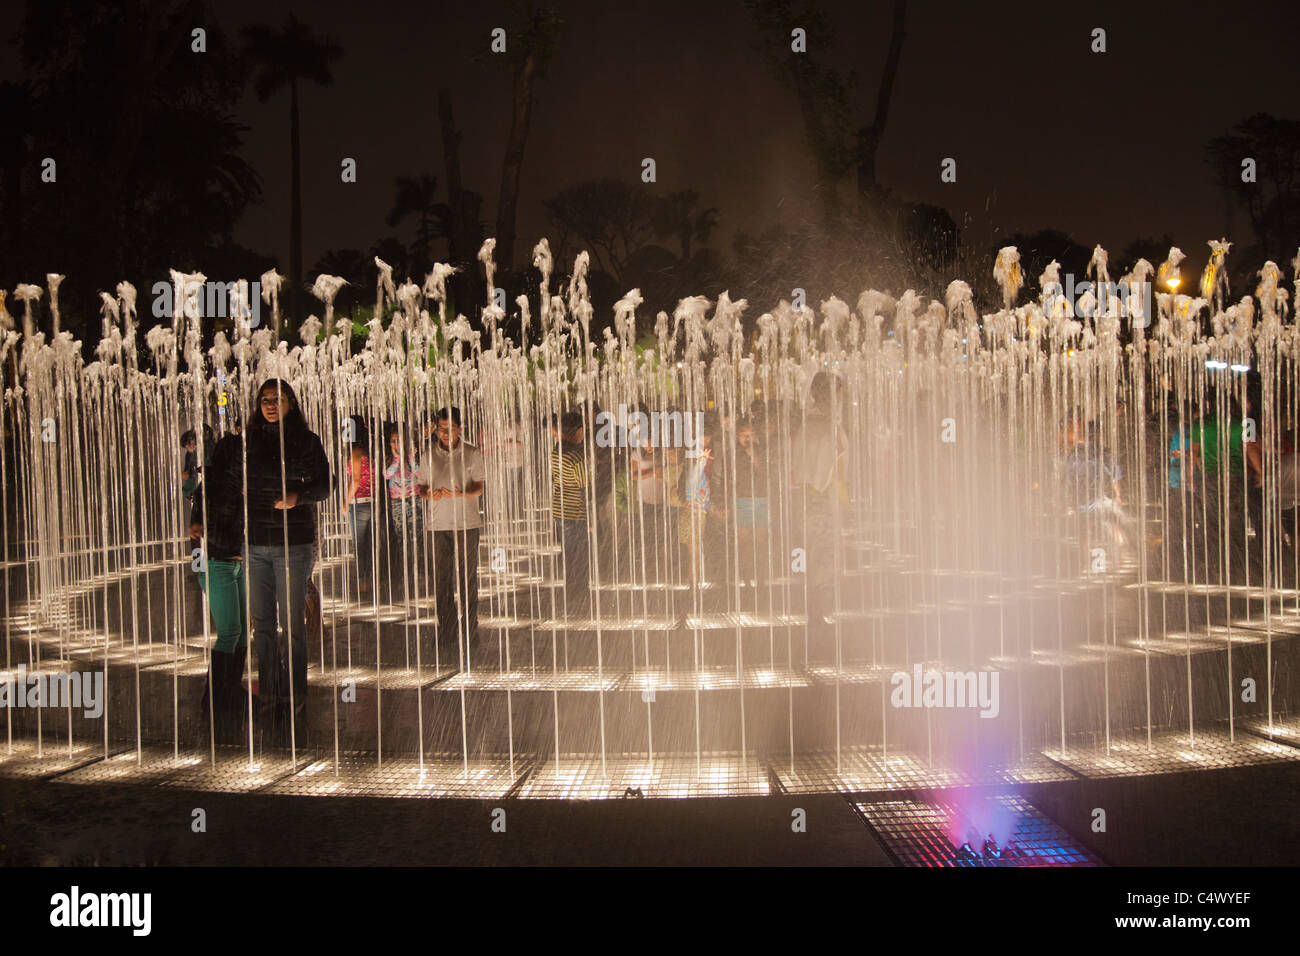 The fountains and light show at Parque de la Reserva, Lima, Peru Stock Photo